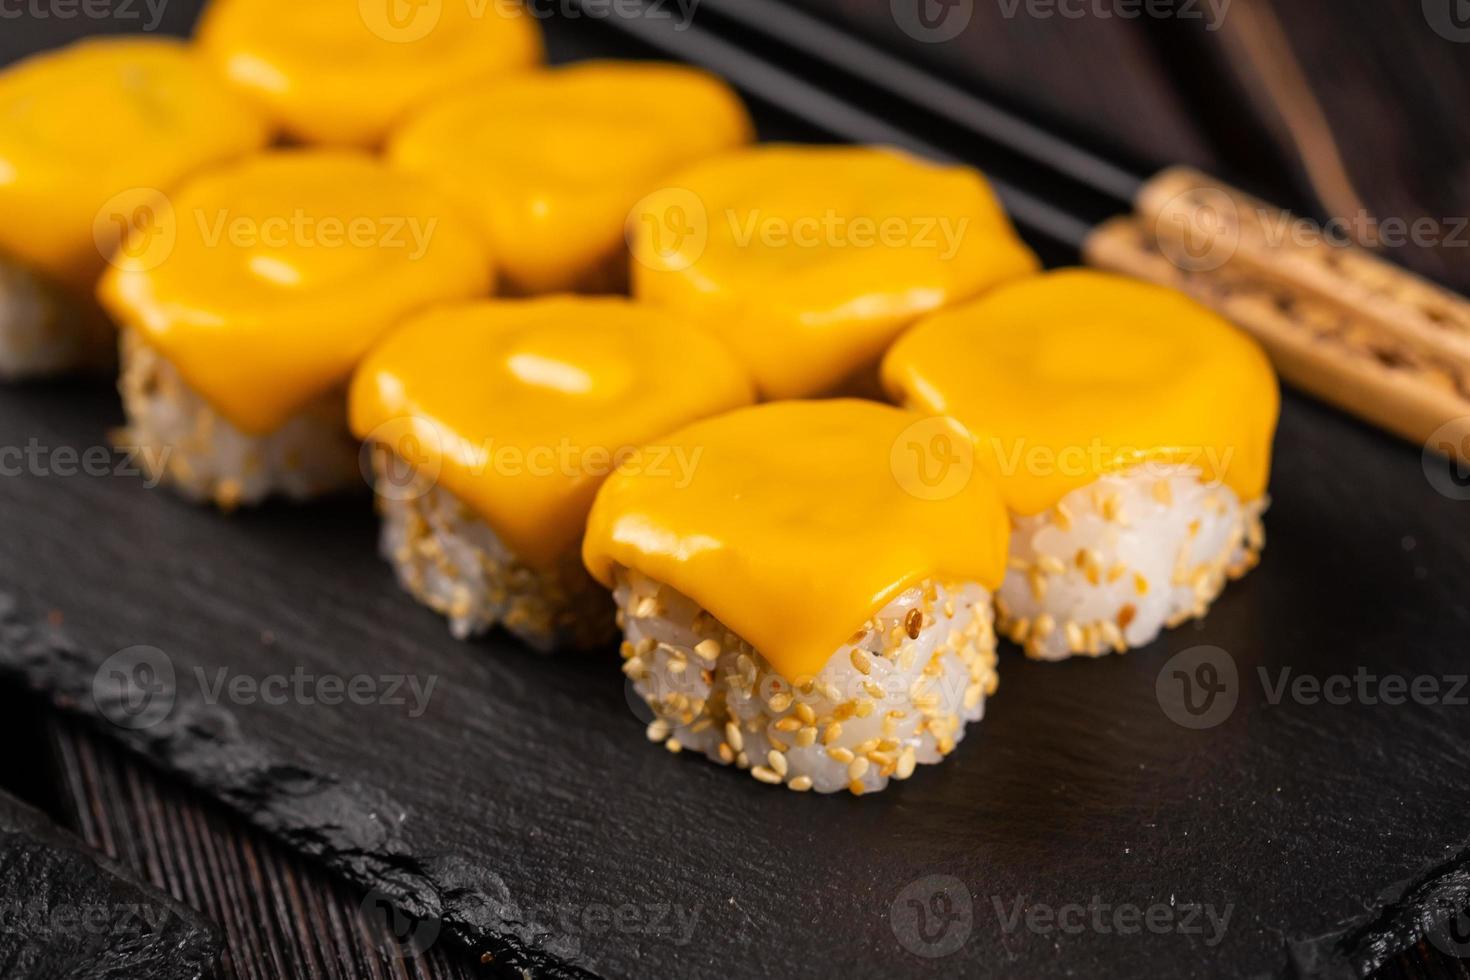 rouleau de sushi au fromage avec des baguettes en gros plan - concept de cuisine japonaise asiatique photo